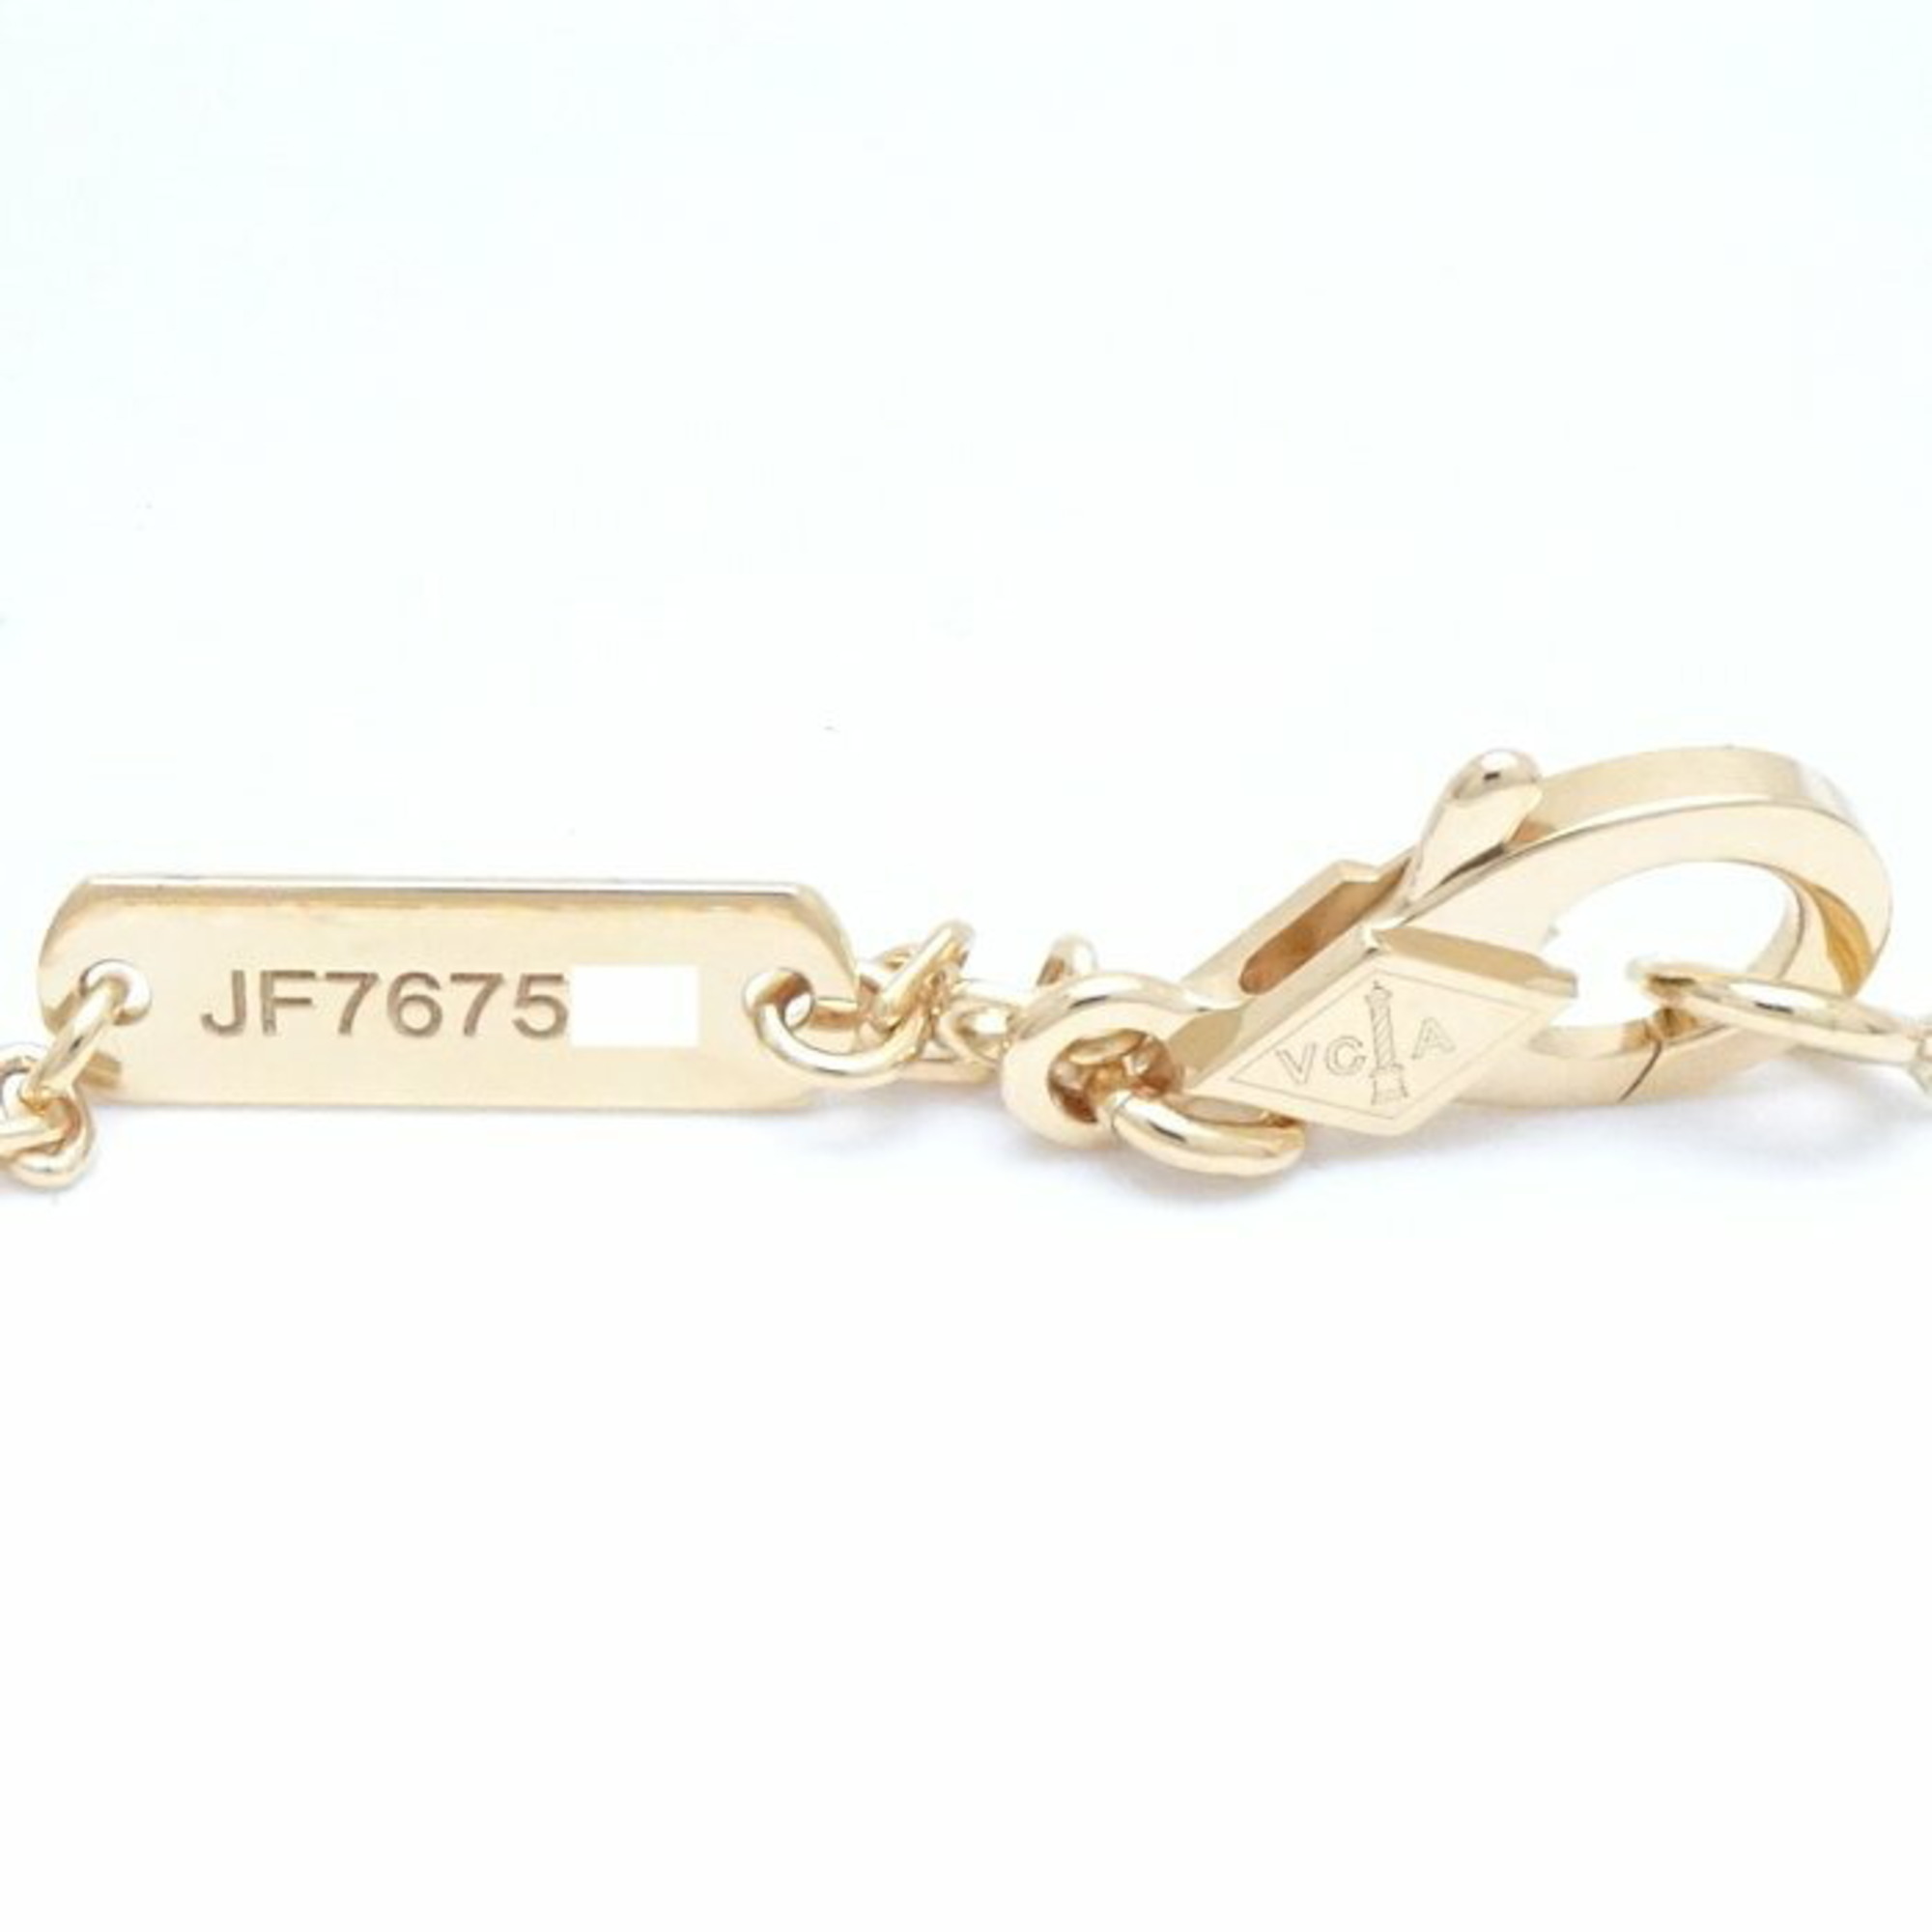 Van Cleef & Arpels Vintage Alhambra Pendant Necklace Onyx VCARA45800 K18YG Yellow Gold 290526